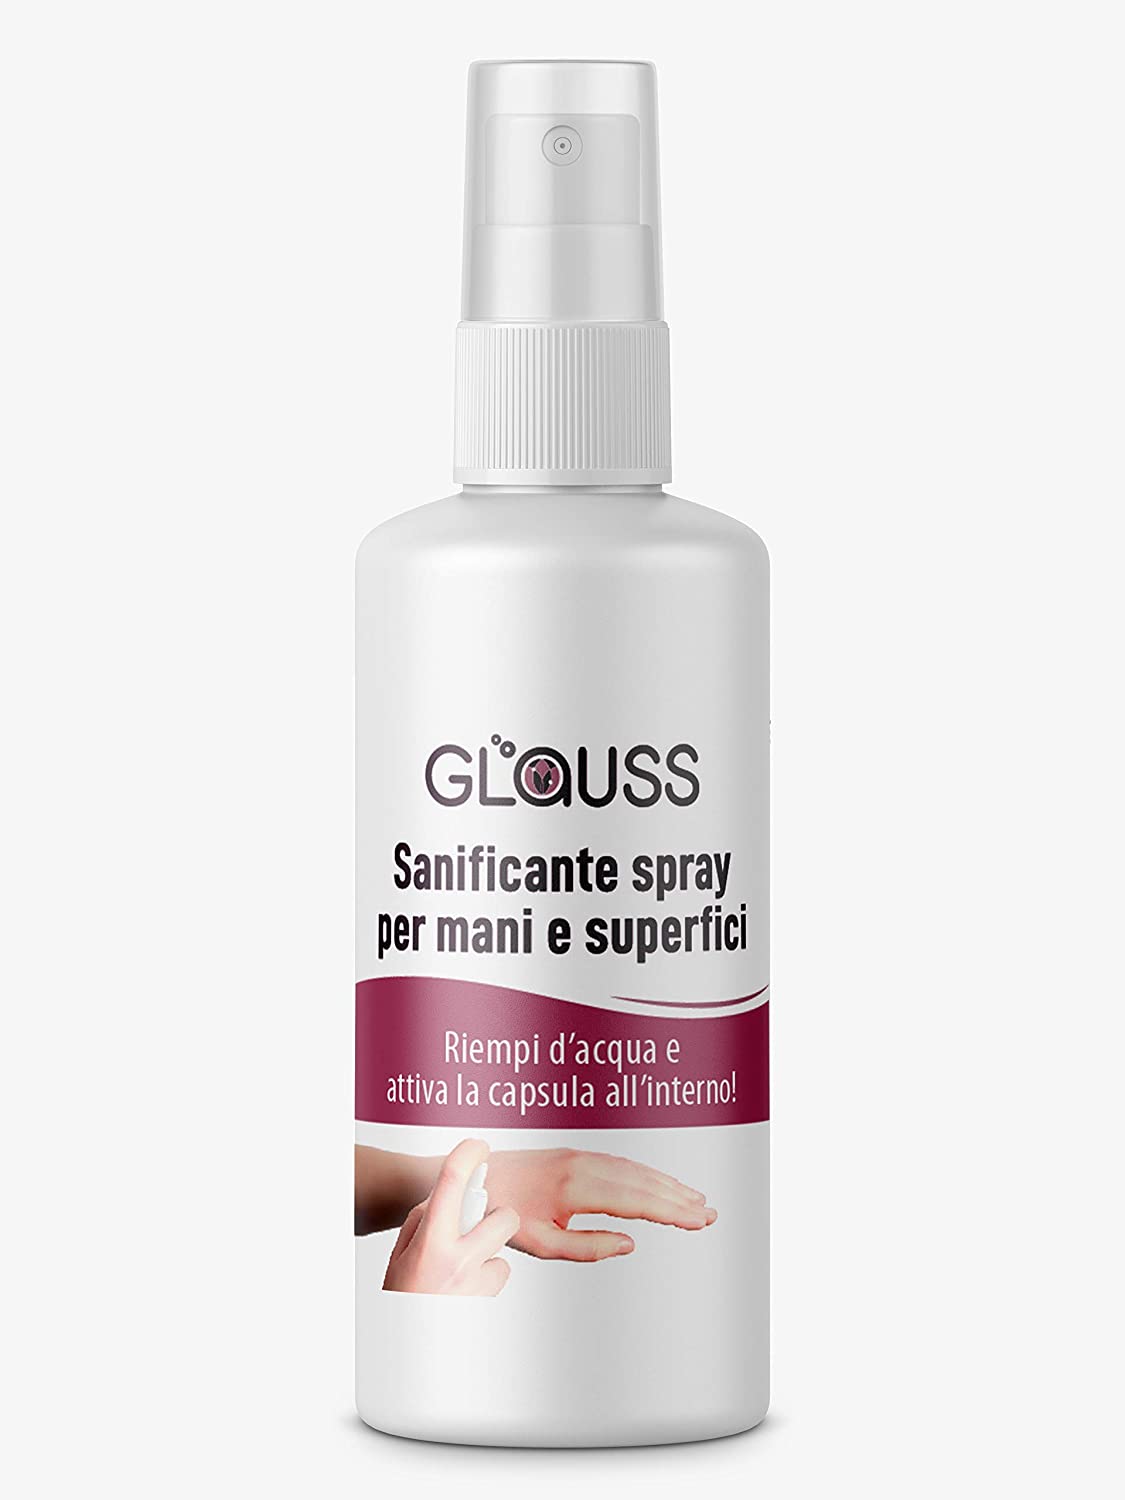 Glauss sanificante spray per mani e superfici - Senza risciacquo - Dermatologicamente testato (Spray 100ml)